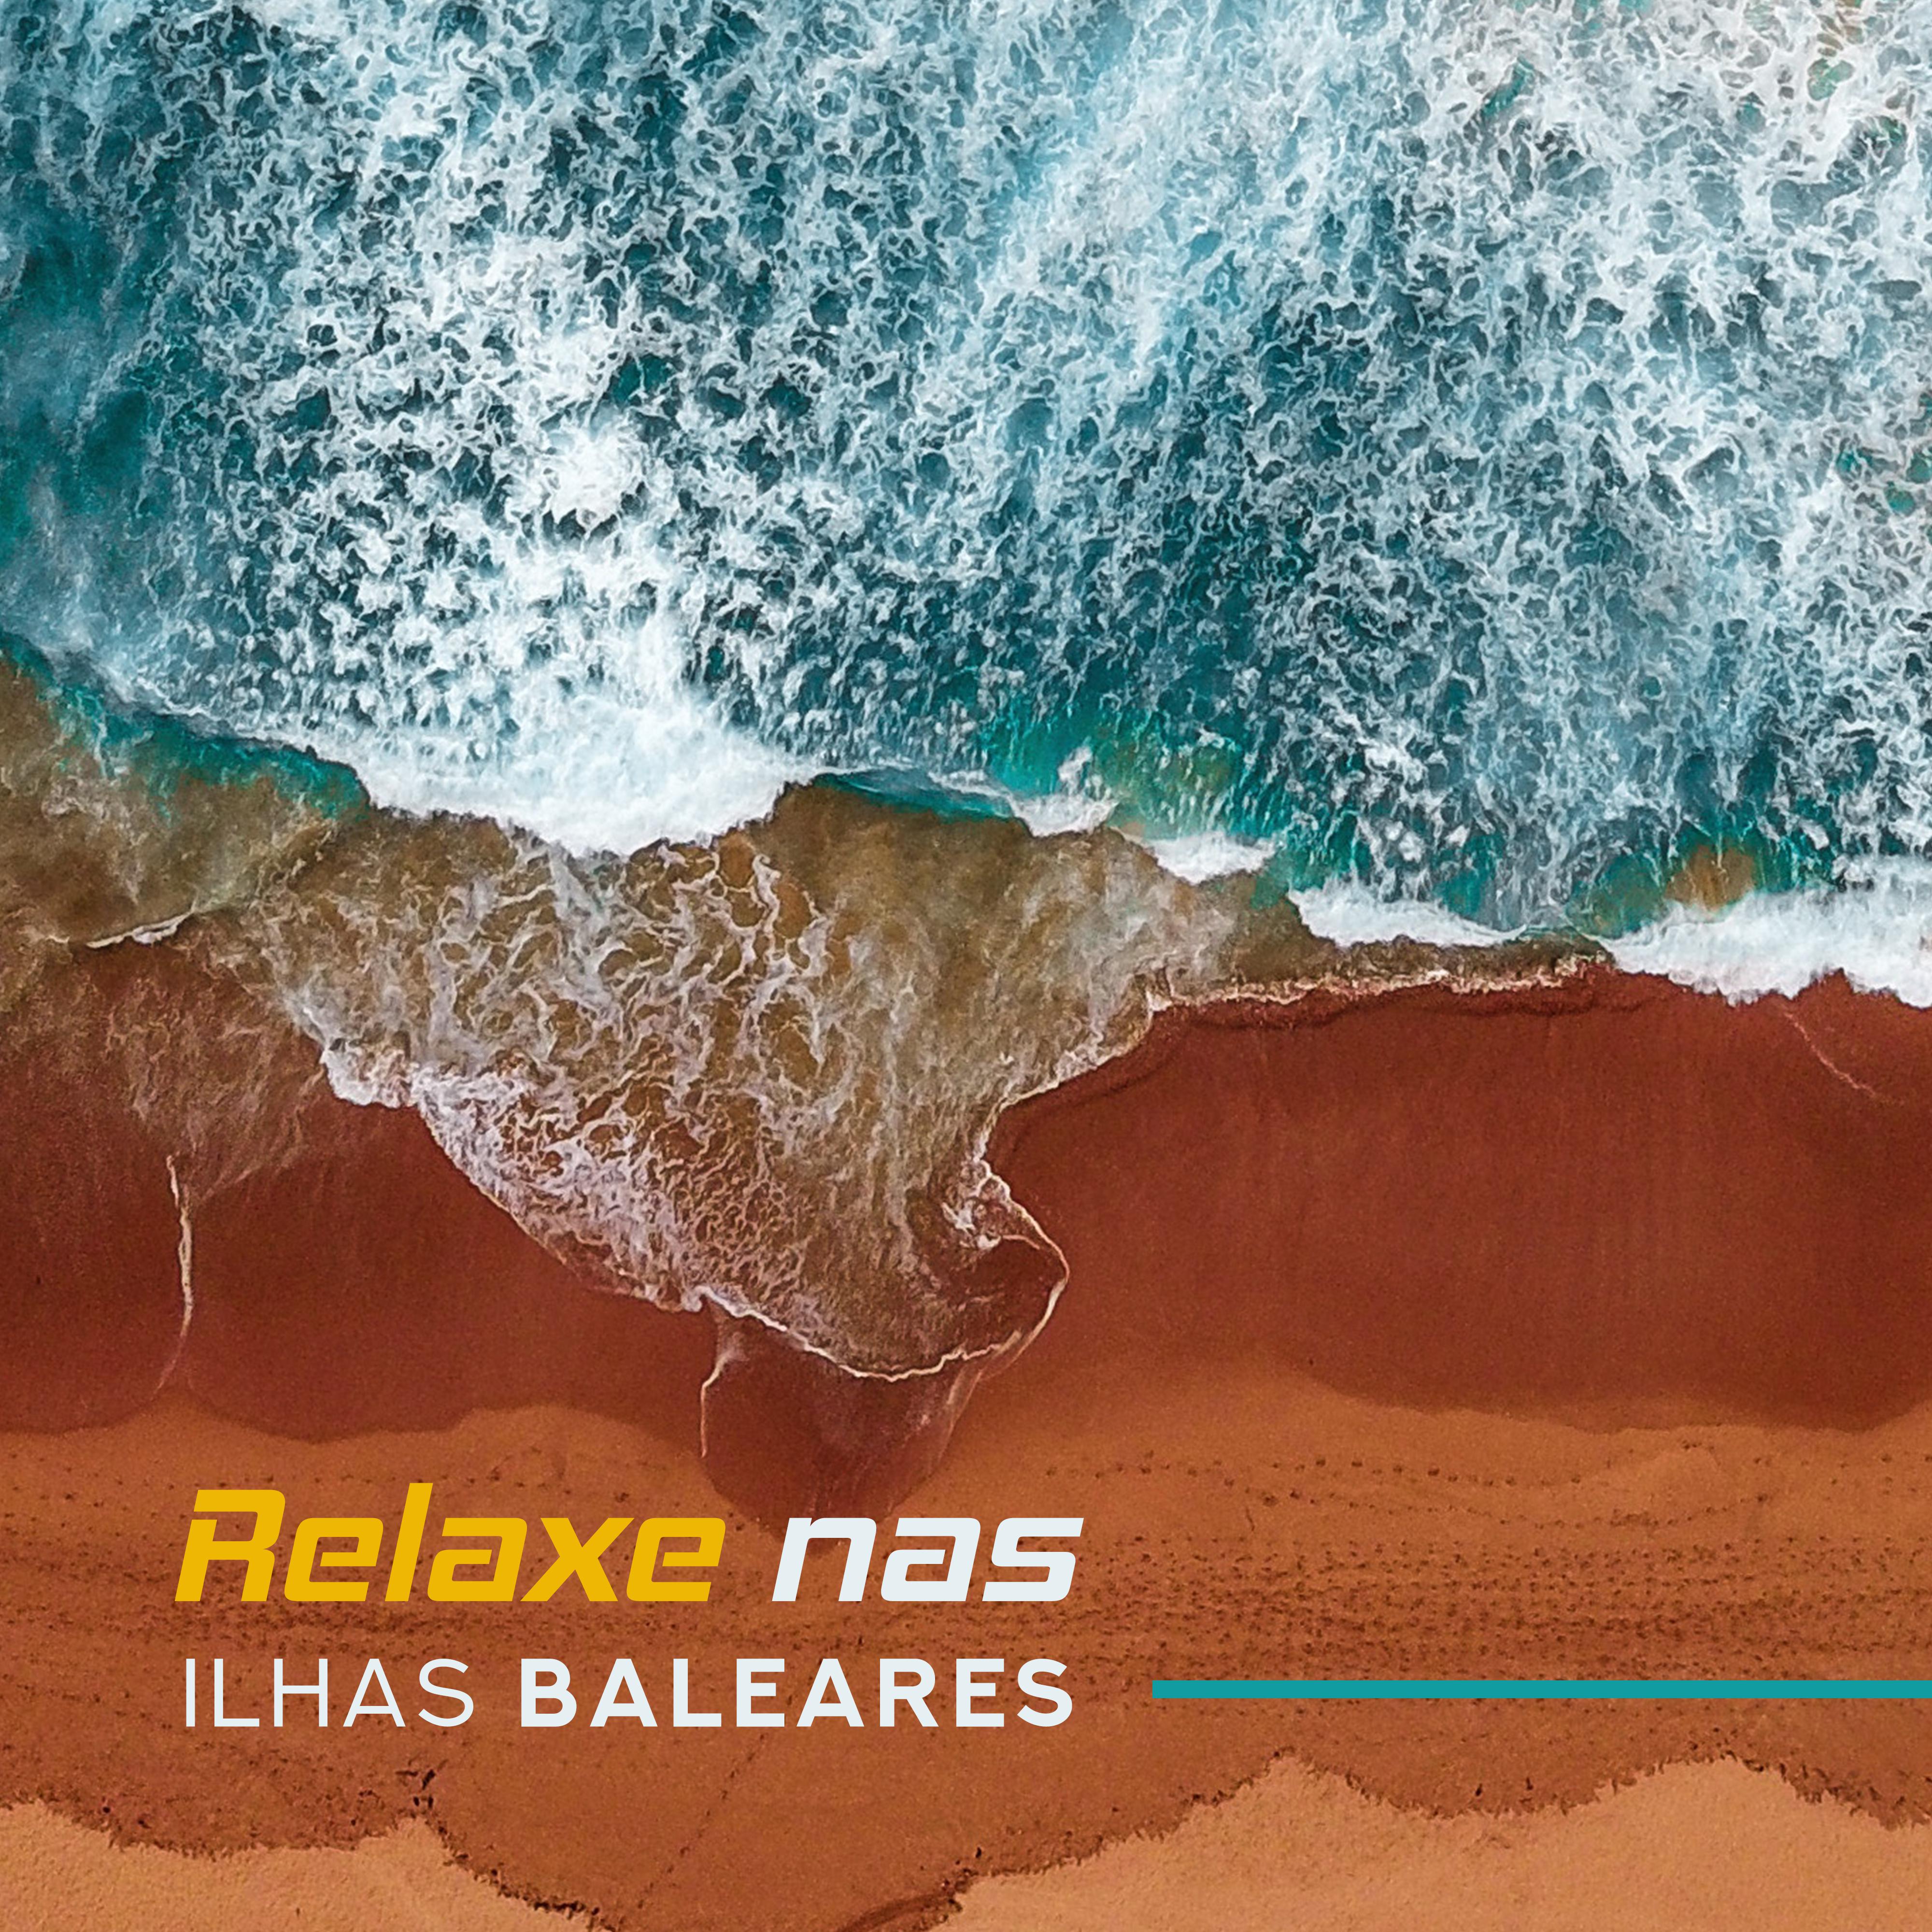 Relaxe nas Ilhas Baleares  15 Faixas de Mu sica para Relaxar na Praia, Tomar Sol, Descansar em uma Espregui adeira ou Mu sica para a Piscina